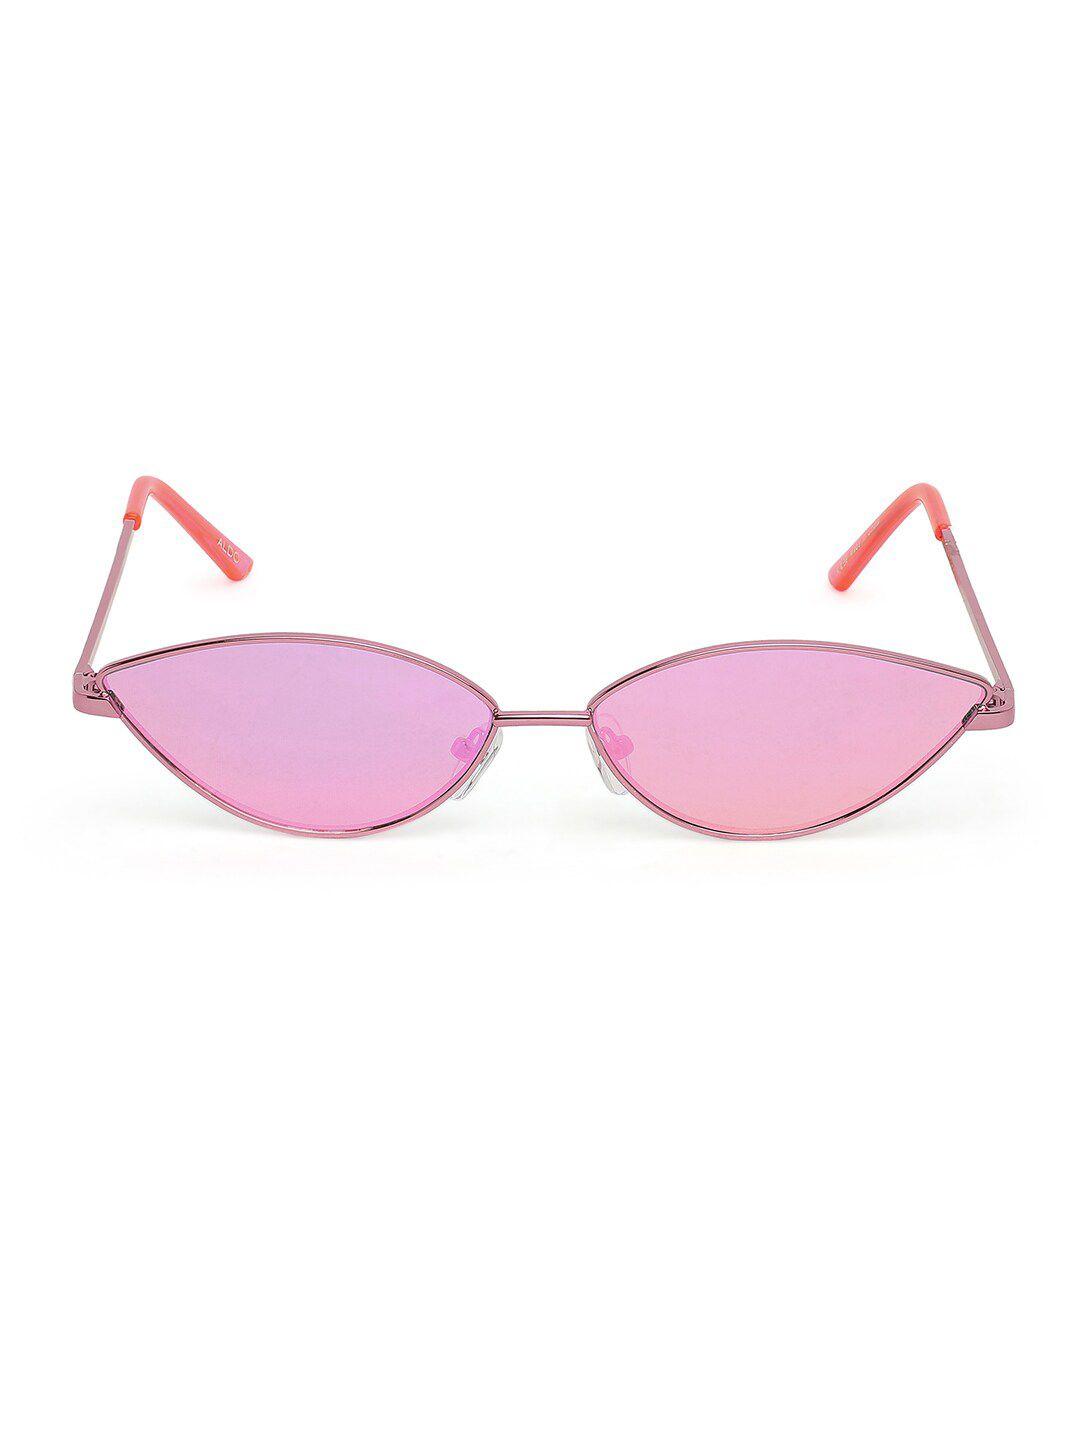 aldo women lens other sunglasses